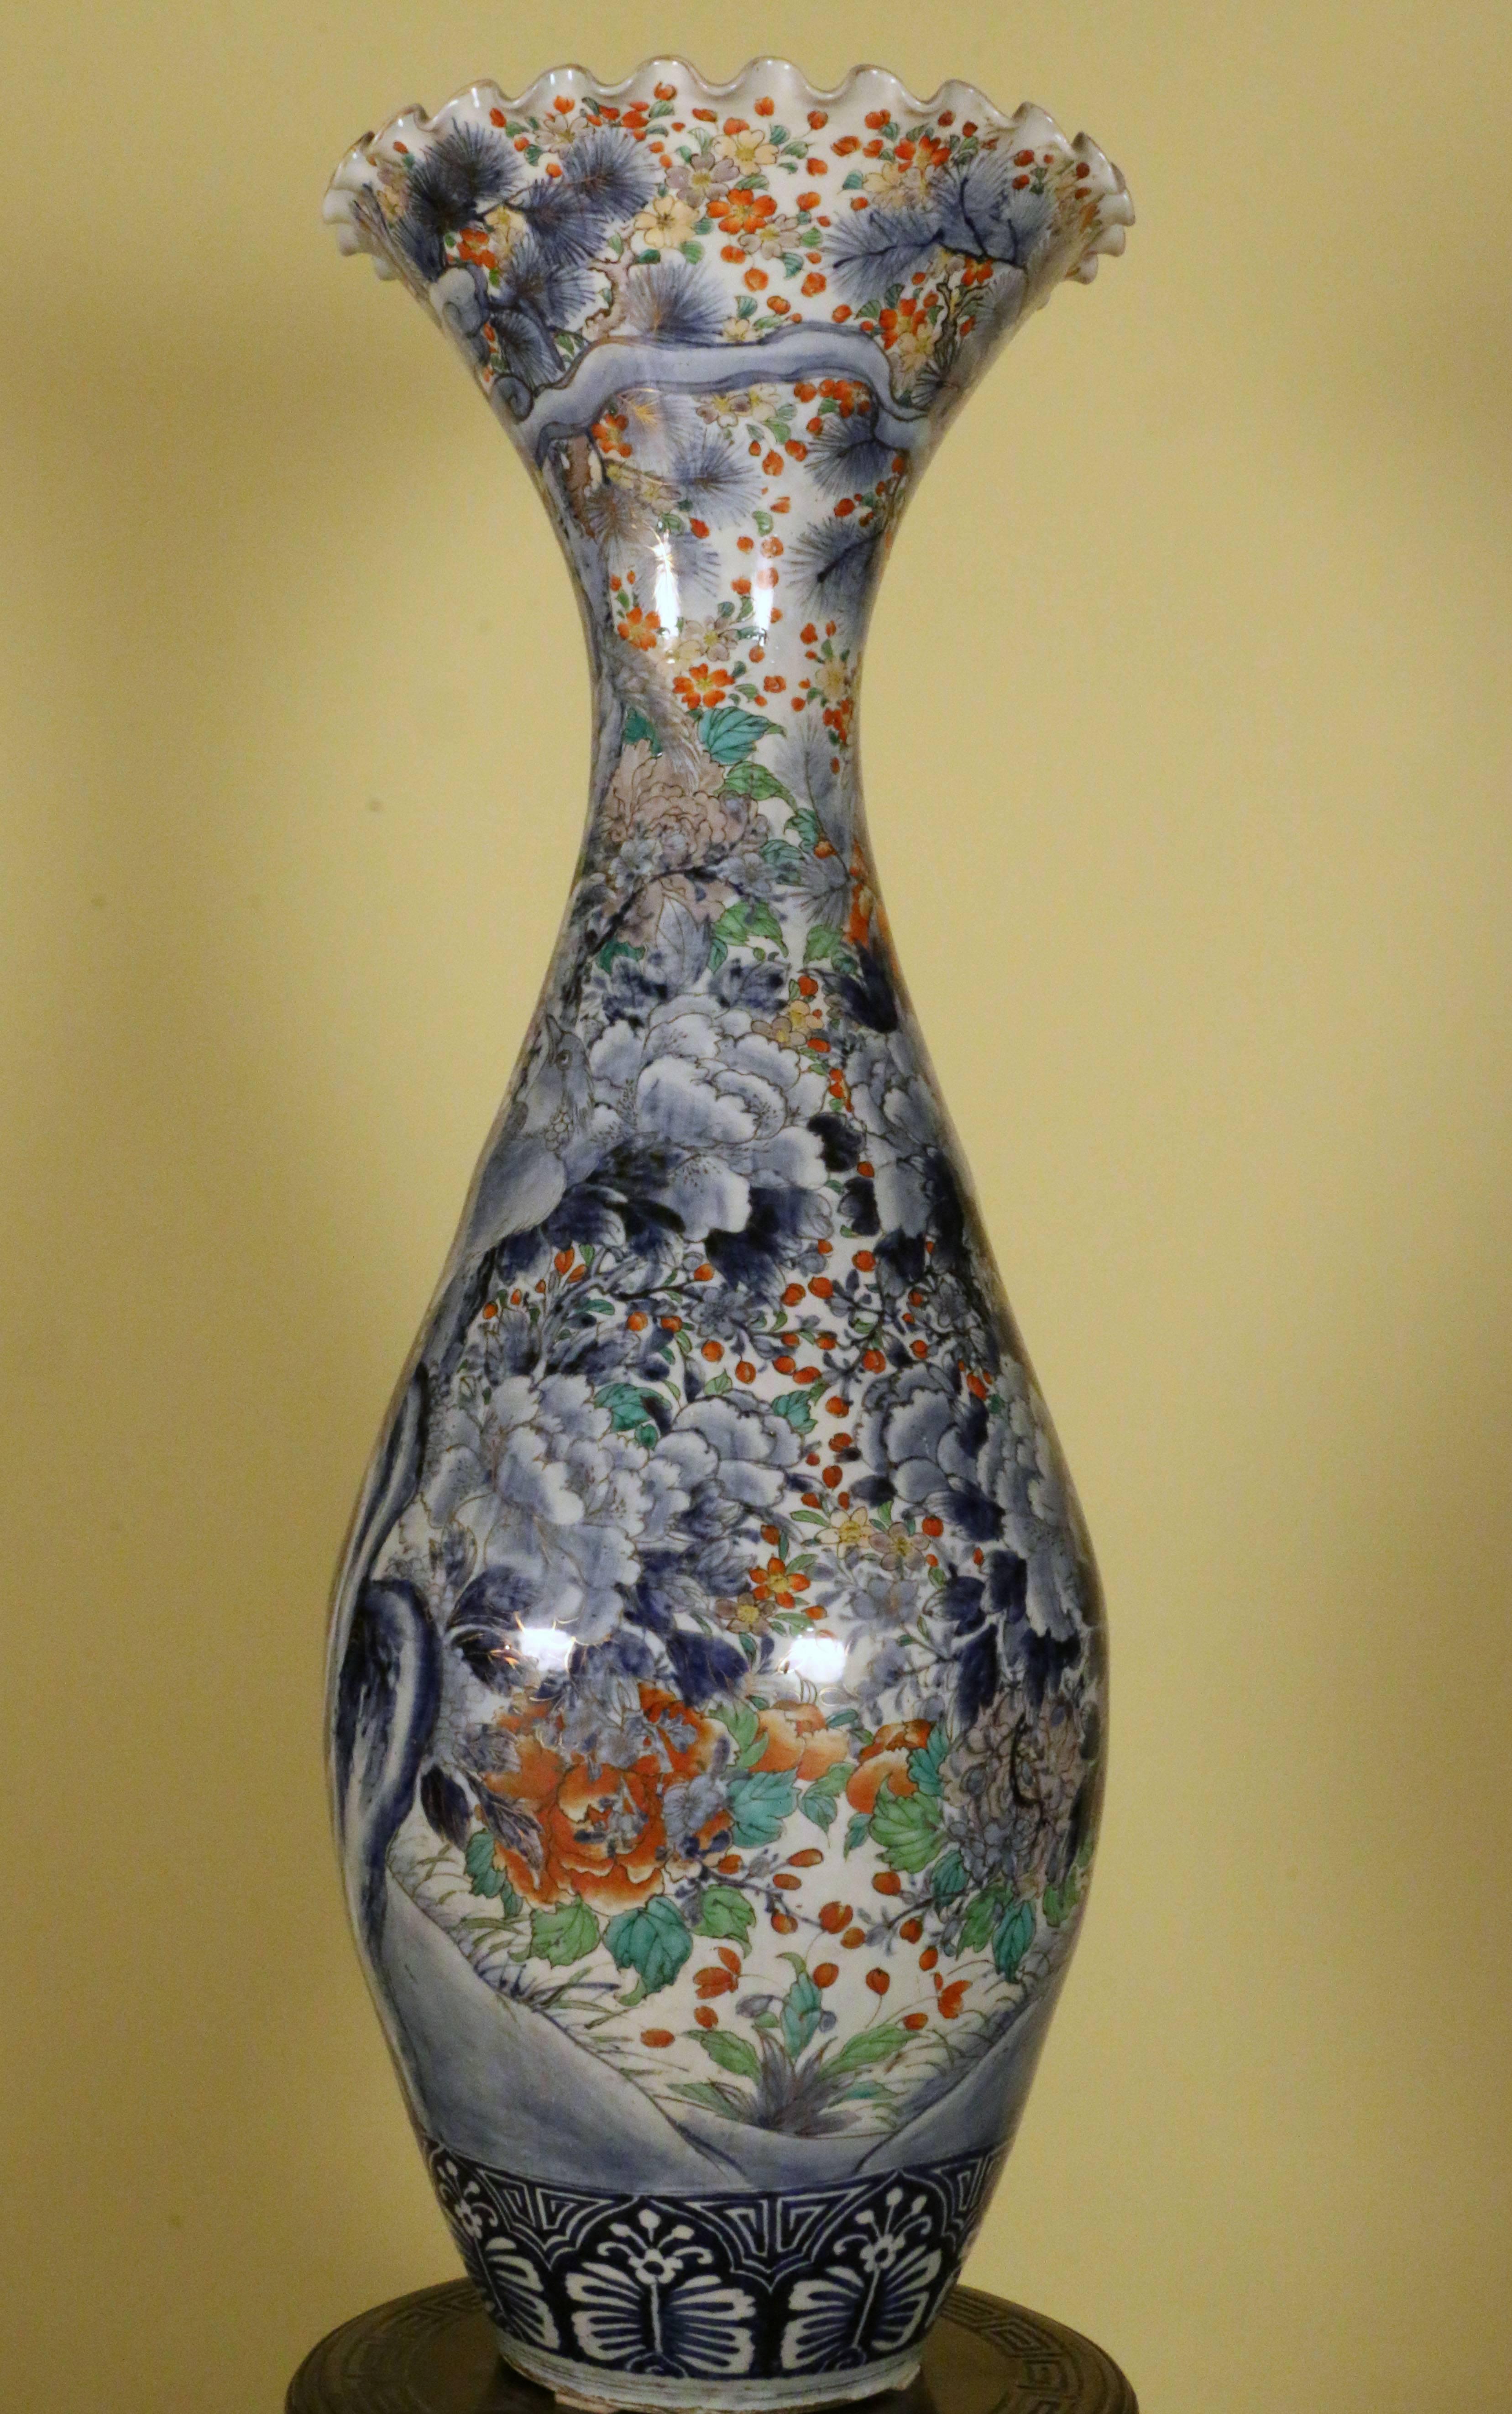 Ce vase a un grand impact décoratif ; le corps ovoïde est peint en palette polychrome avec des oiseaux dans un paysage fleuri, centré sur un vieux tronc d'arbre. La décoration est abondante mais bien pensée, avec deux grands oiseaux perchés sur le